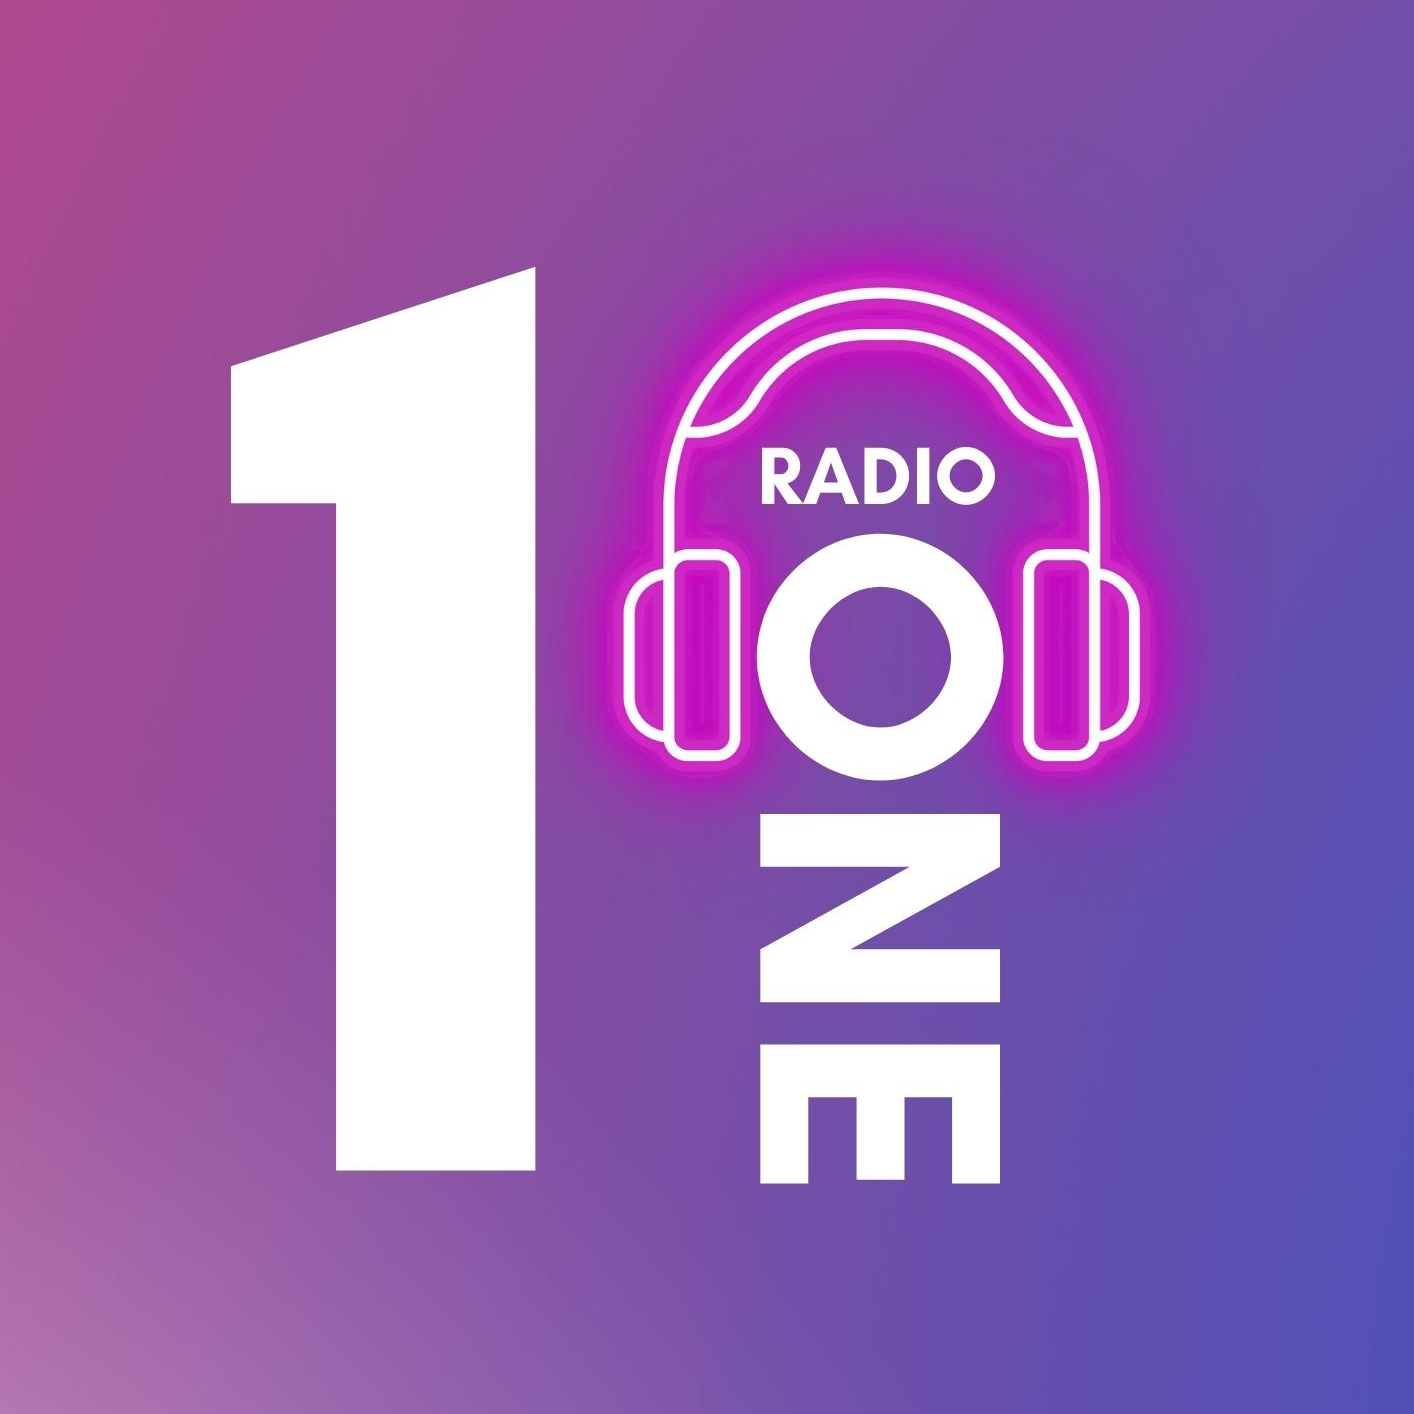 ONE ONE RADIO